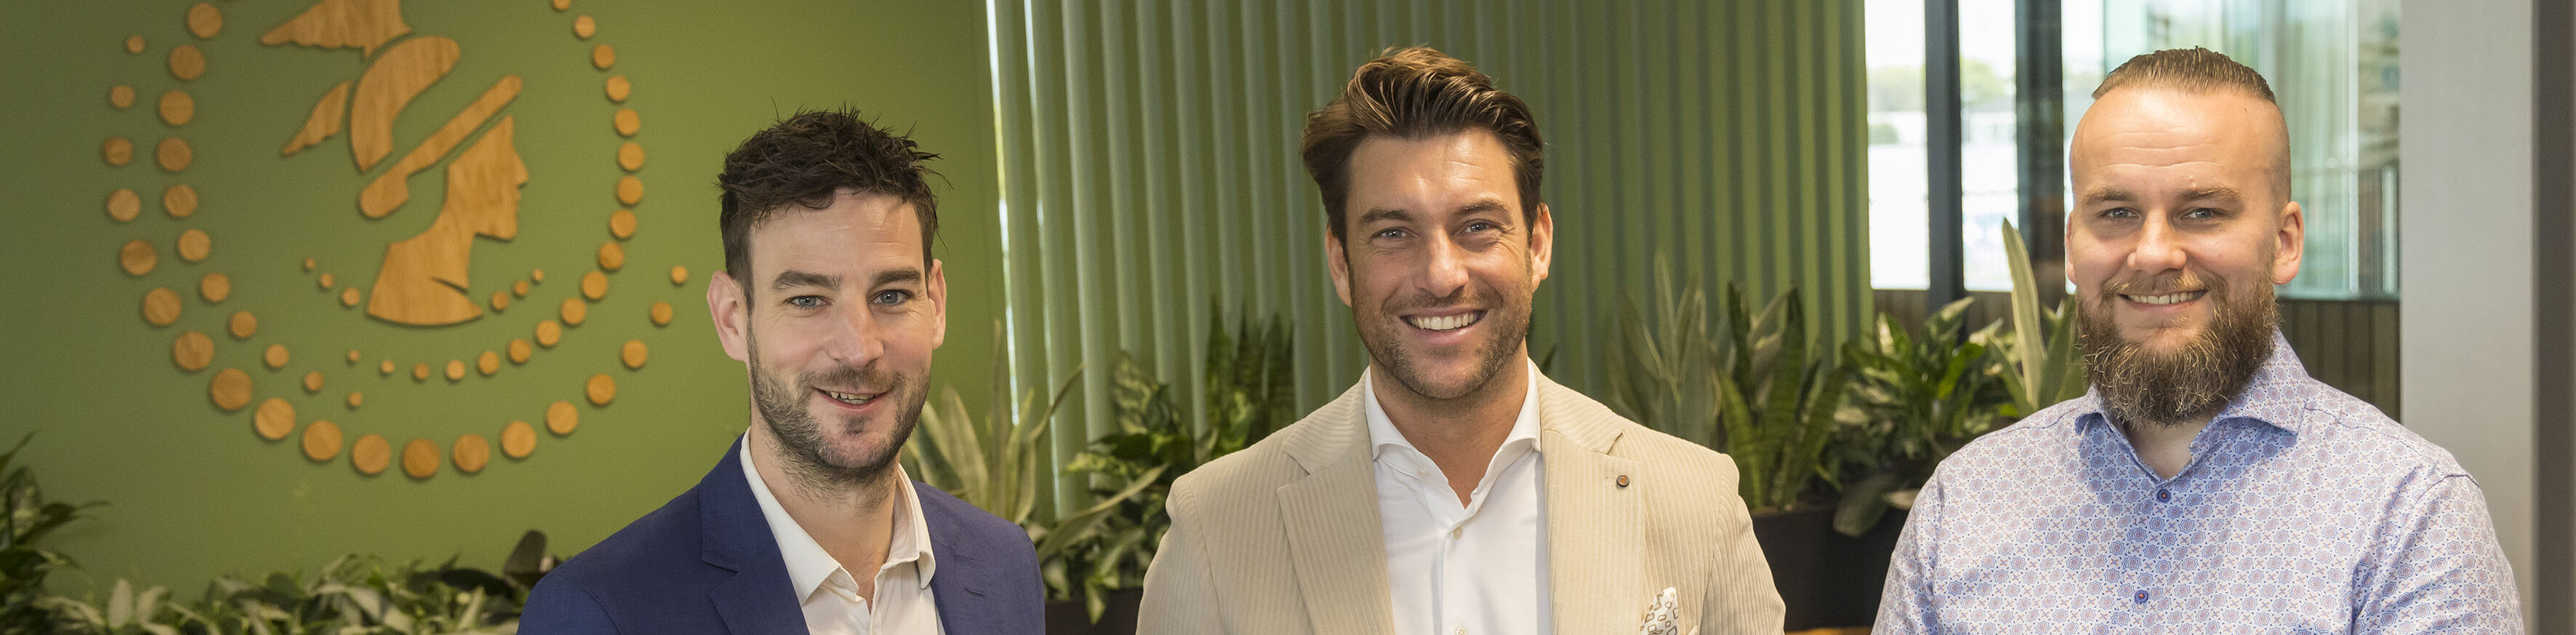 Salesmanager Nick van Paassen (l.), directeur Rick de Vroom (m.) en hoofdredacteur René de Hoog. (Foto Thierry Schut)